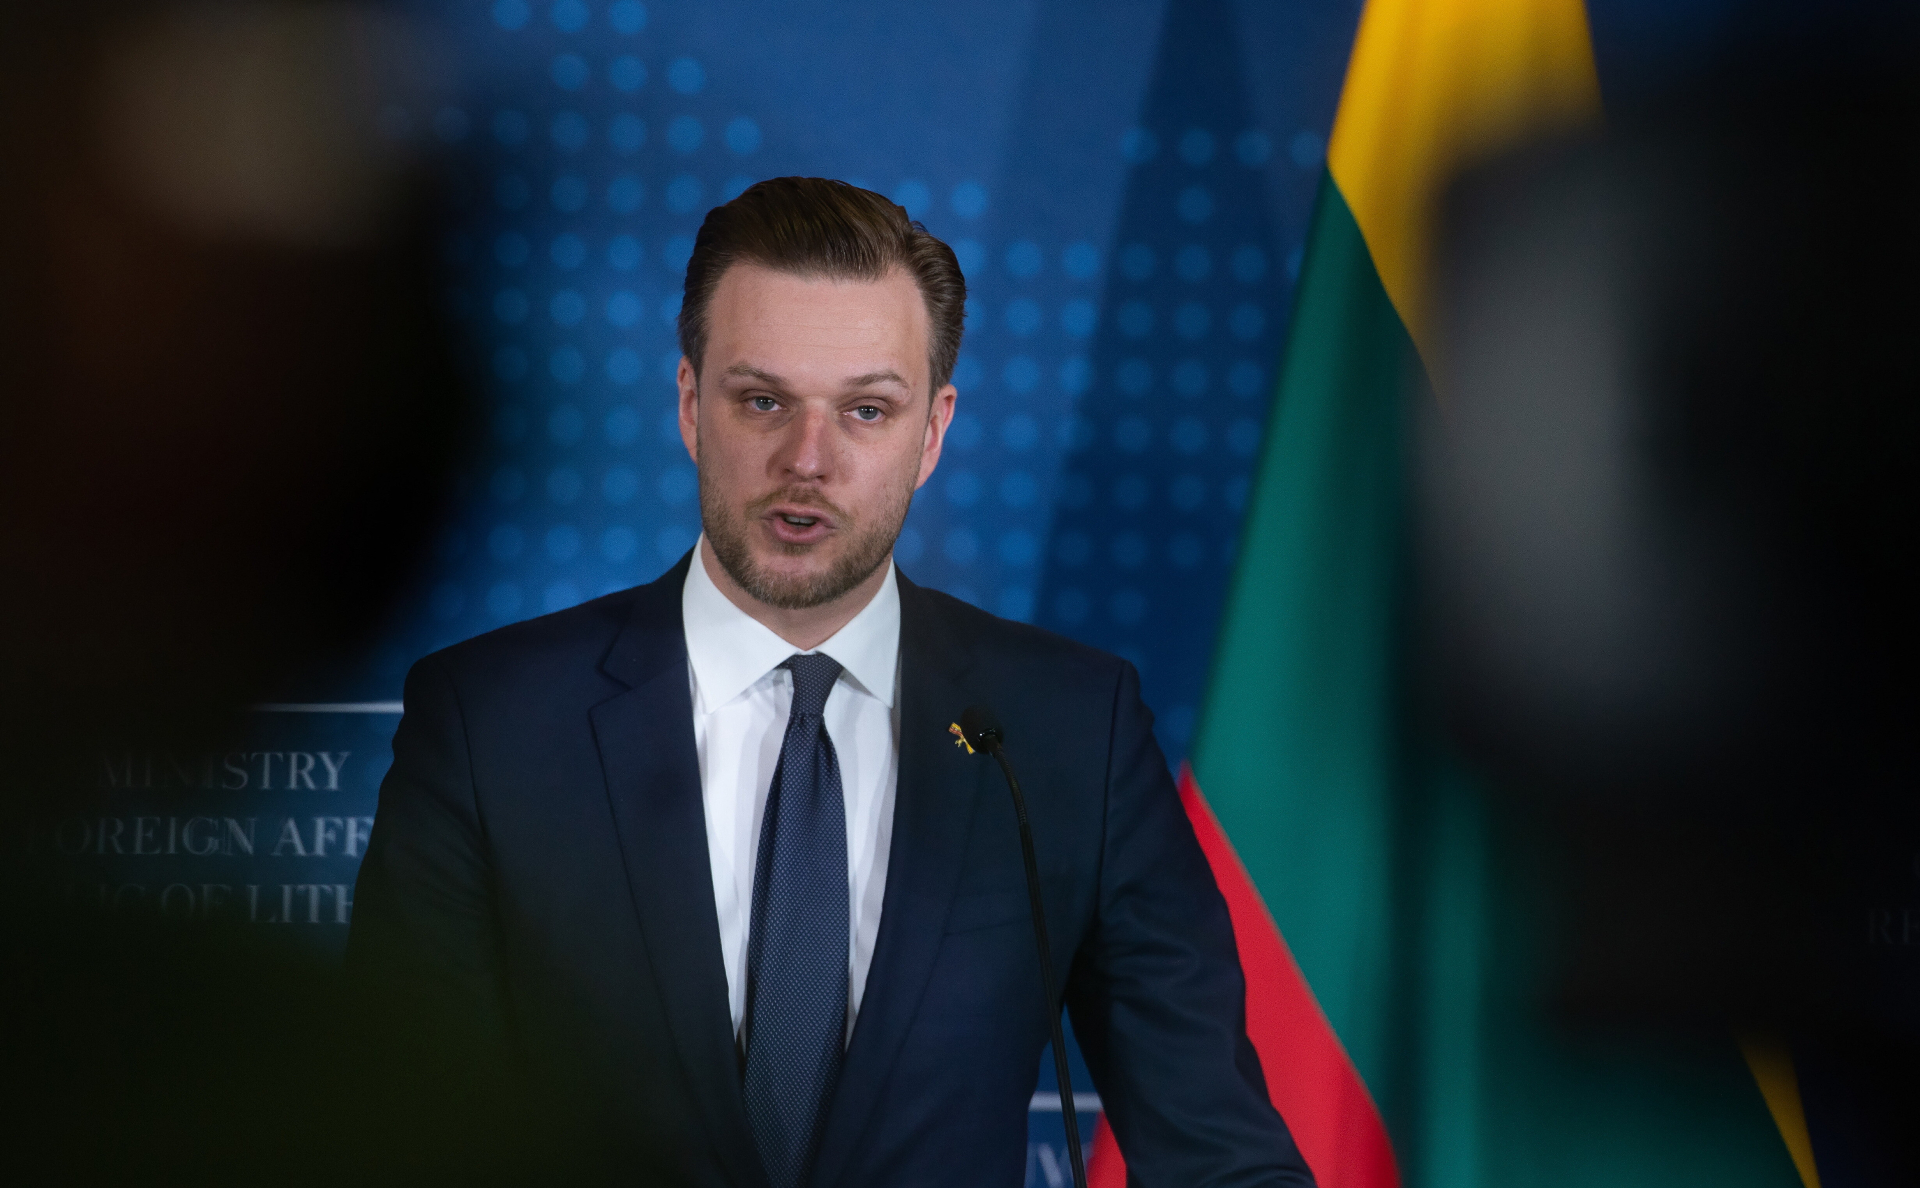 МИД Литвы счел угрозой законопроект об отмене признания независимости"/>













